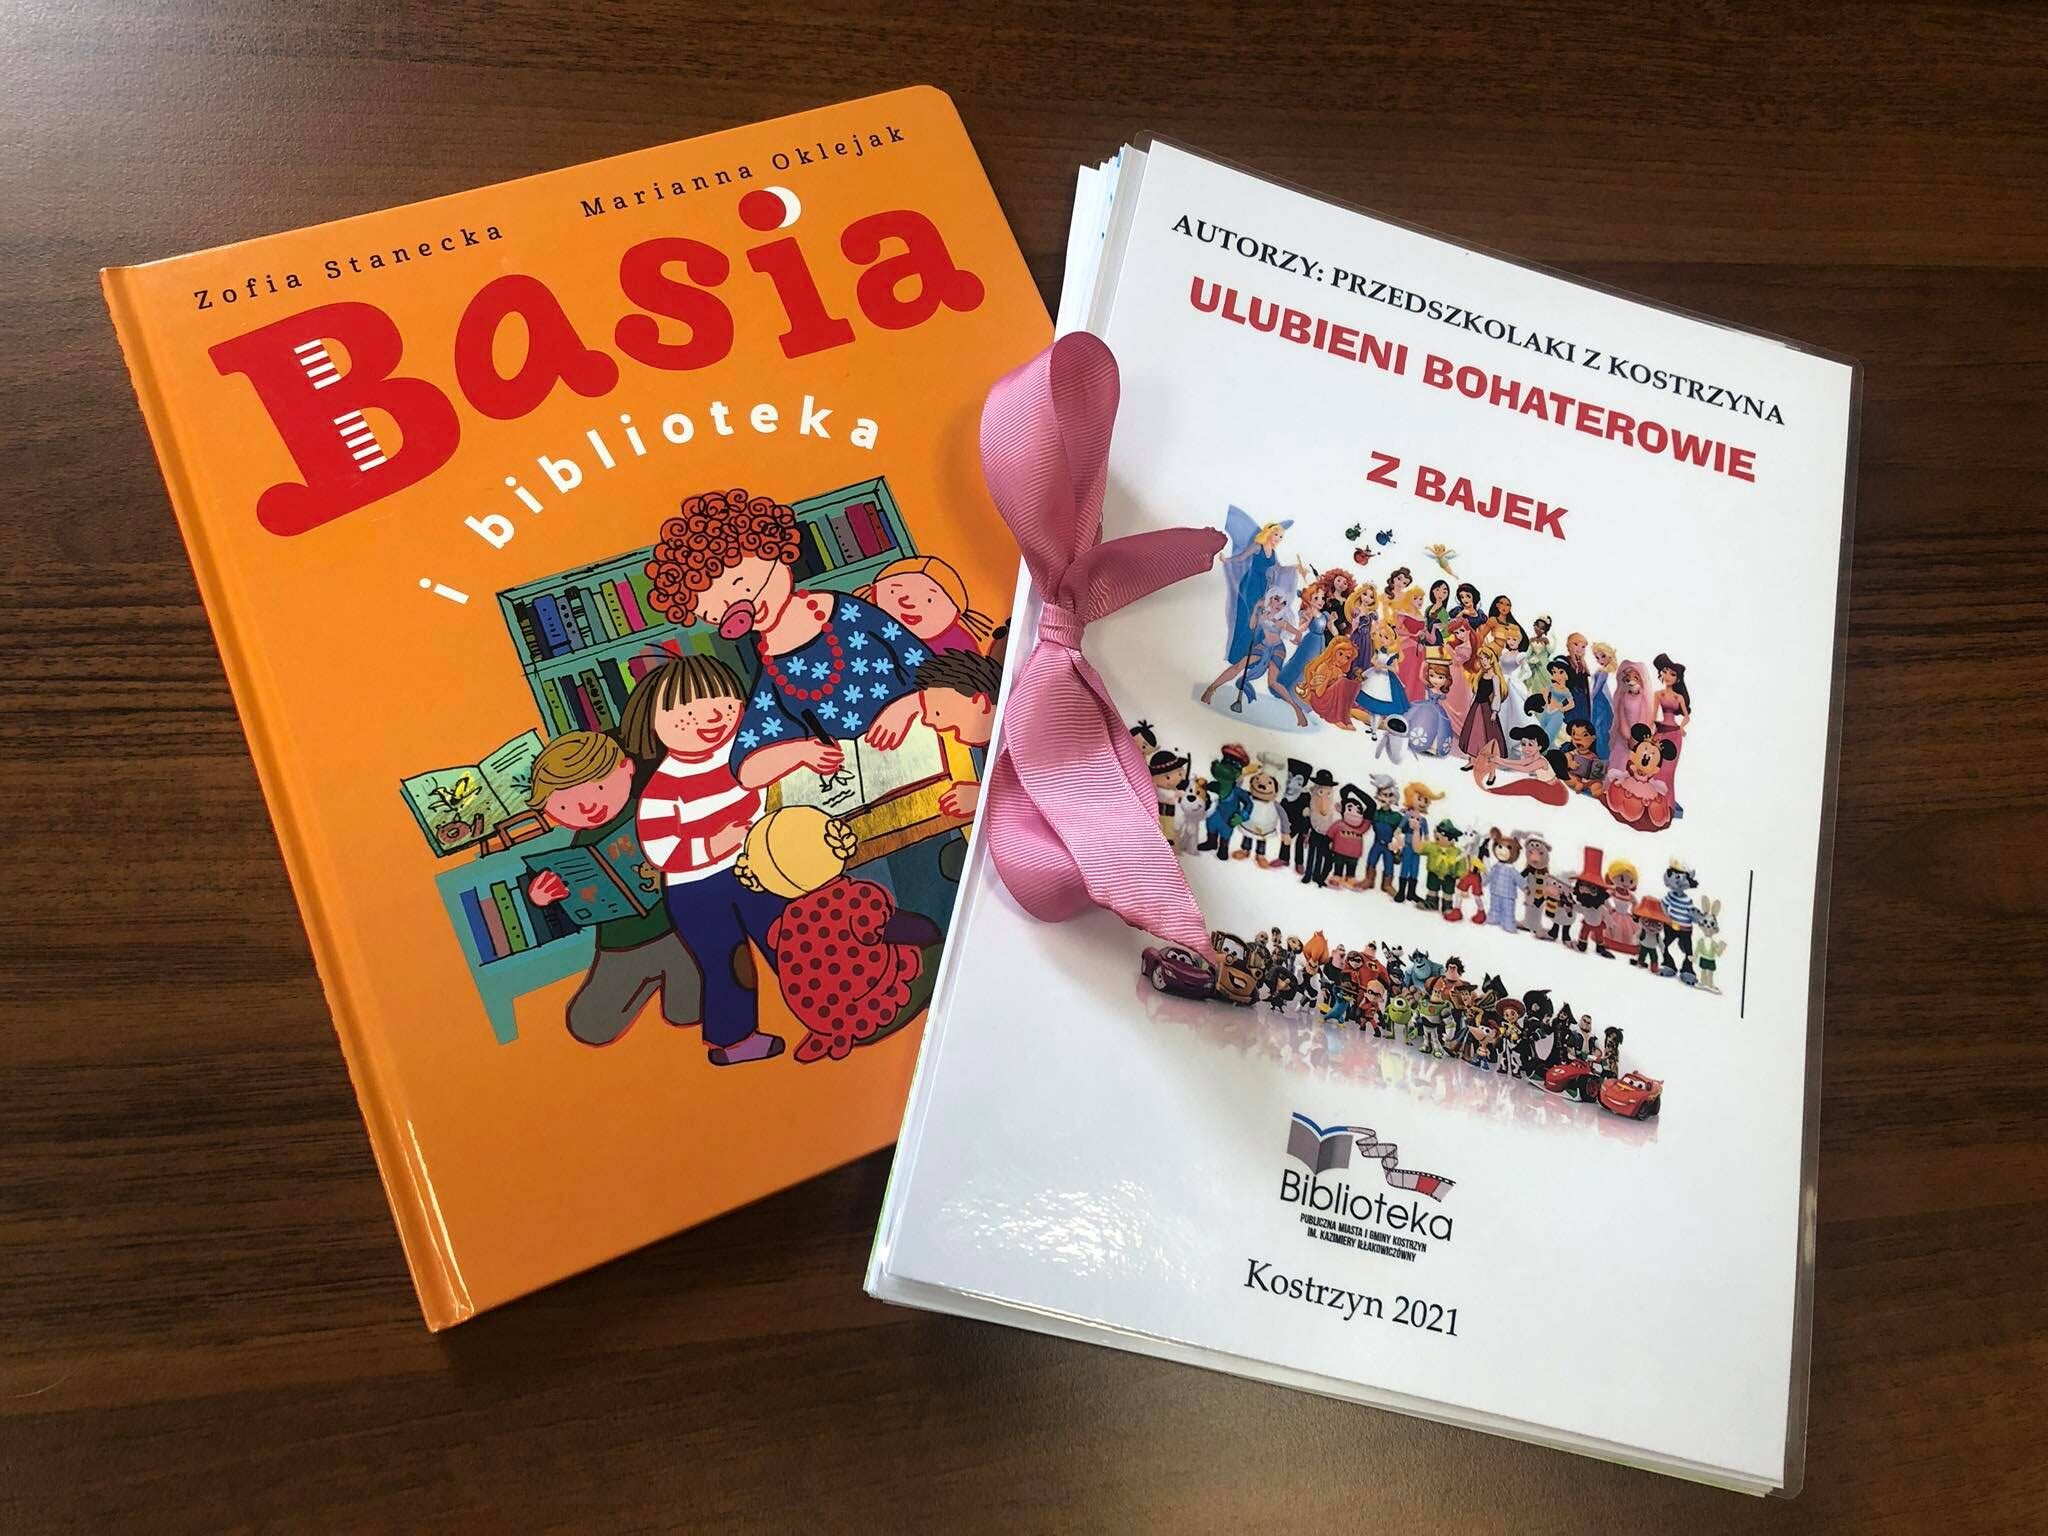 Na zdjęciu książka pt. "Basia" oraz książka stworzona z rysunków wykonanych przez dzieci podczas Literackiego Czwartku.